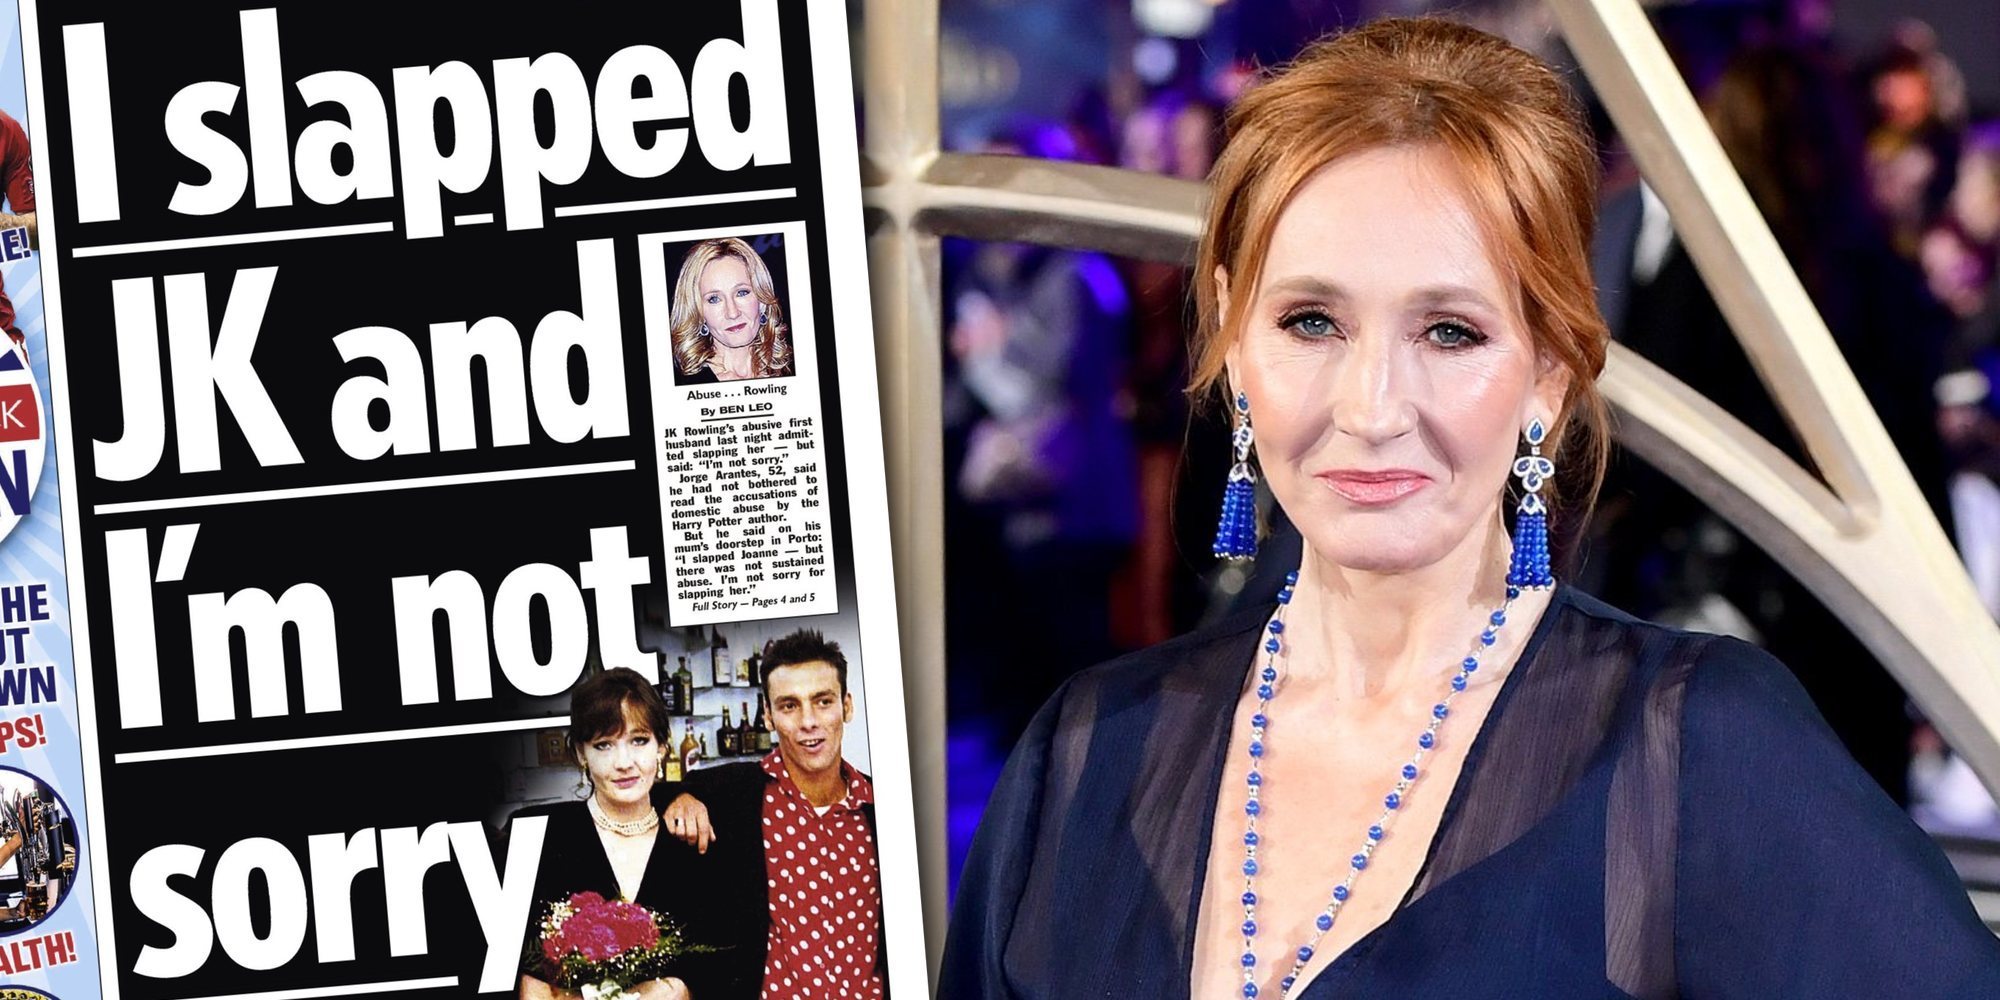 El exmarido de J.K. Rowling sobre las acusaciones de su exmujer: "La abofeteé y no me arrepiento"